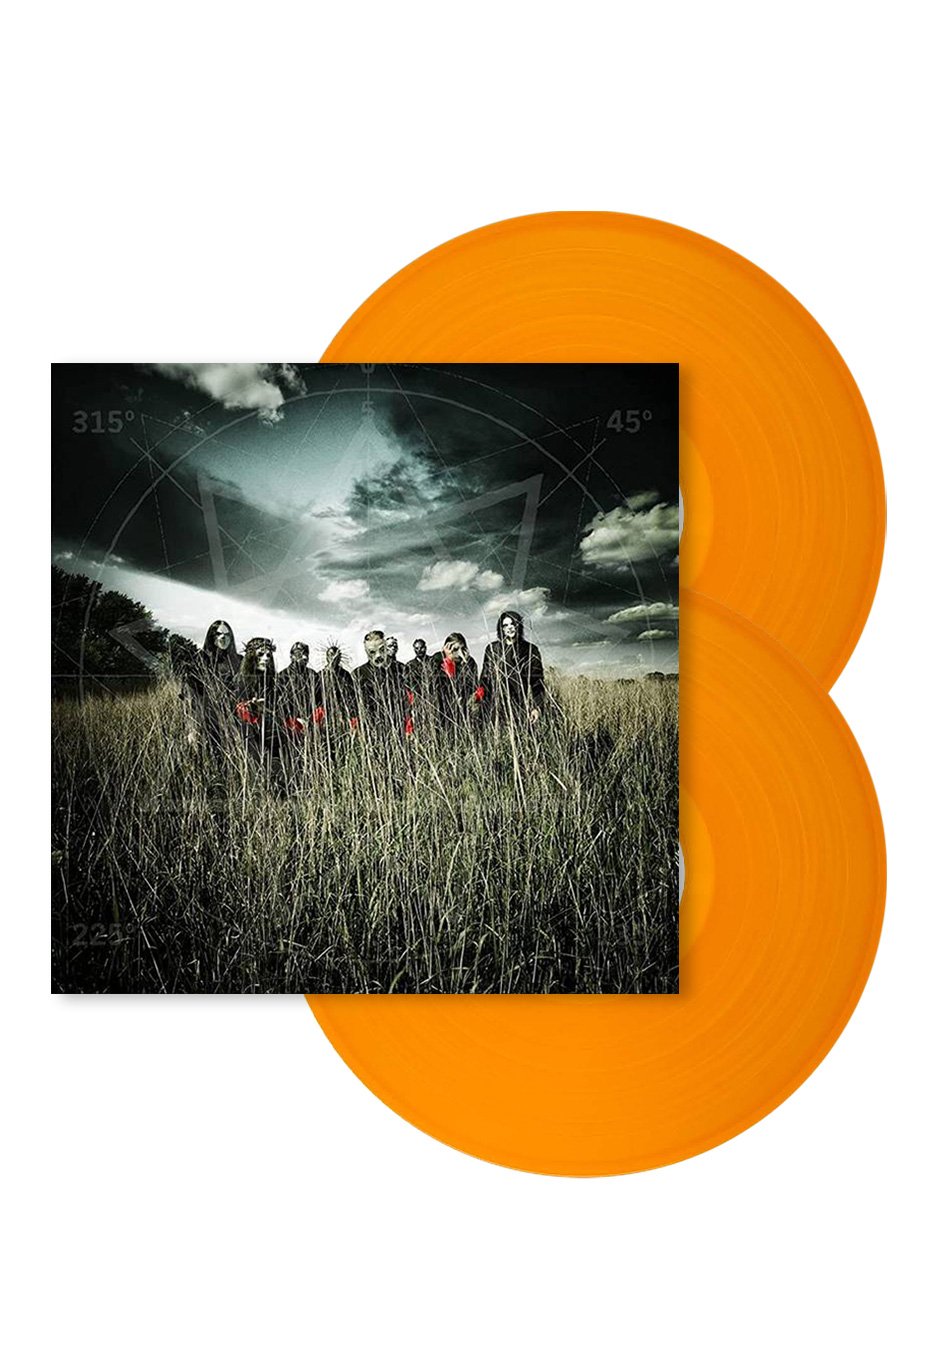 Slipknot - All Hope Is Gone Orange - Colored 2 Vinyl